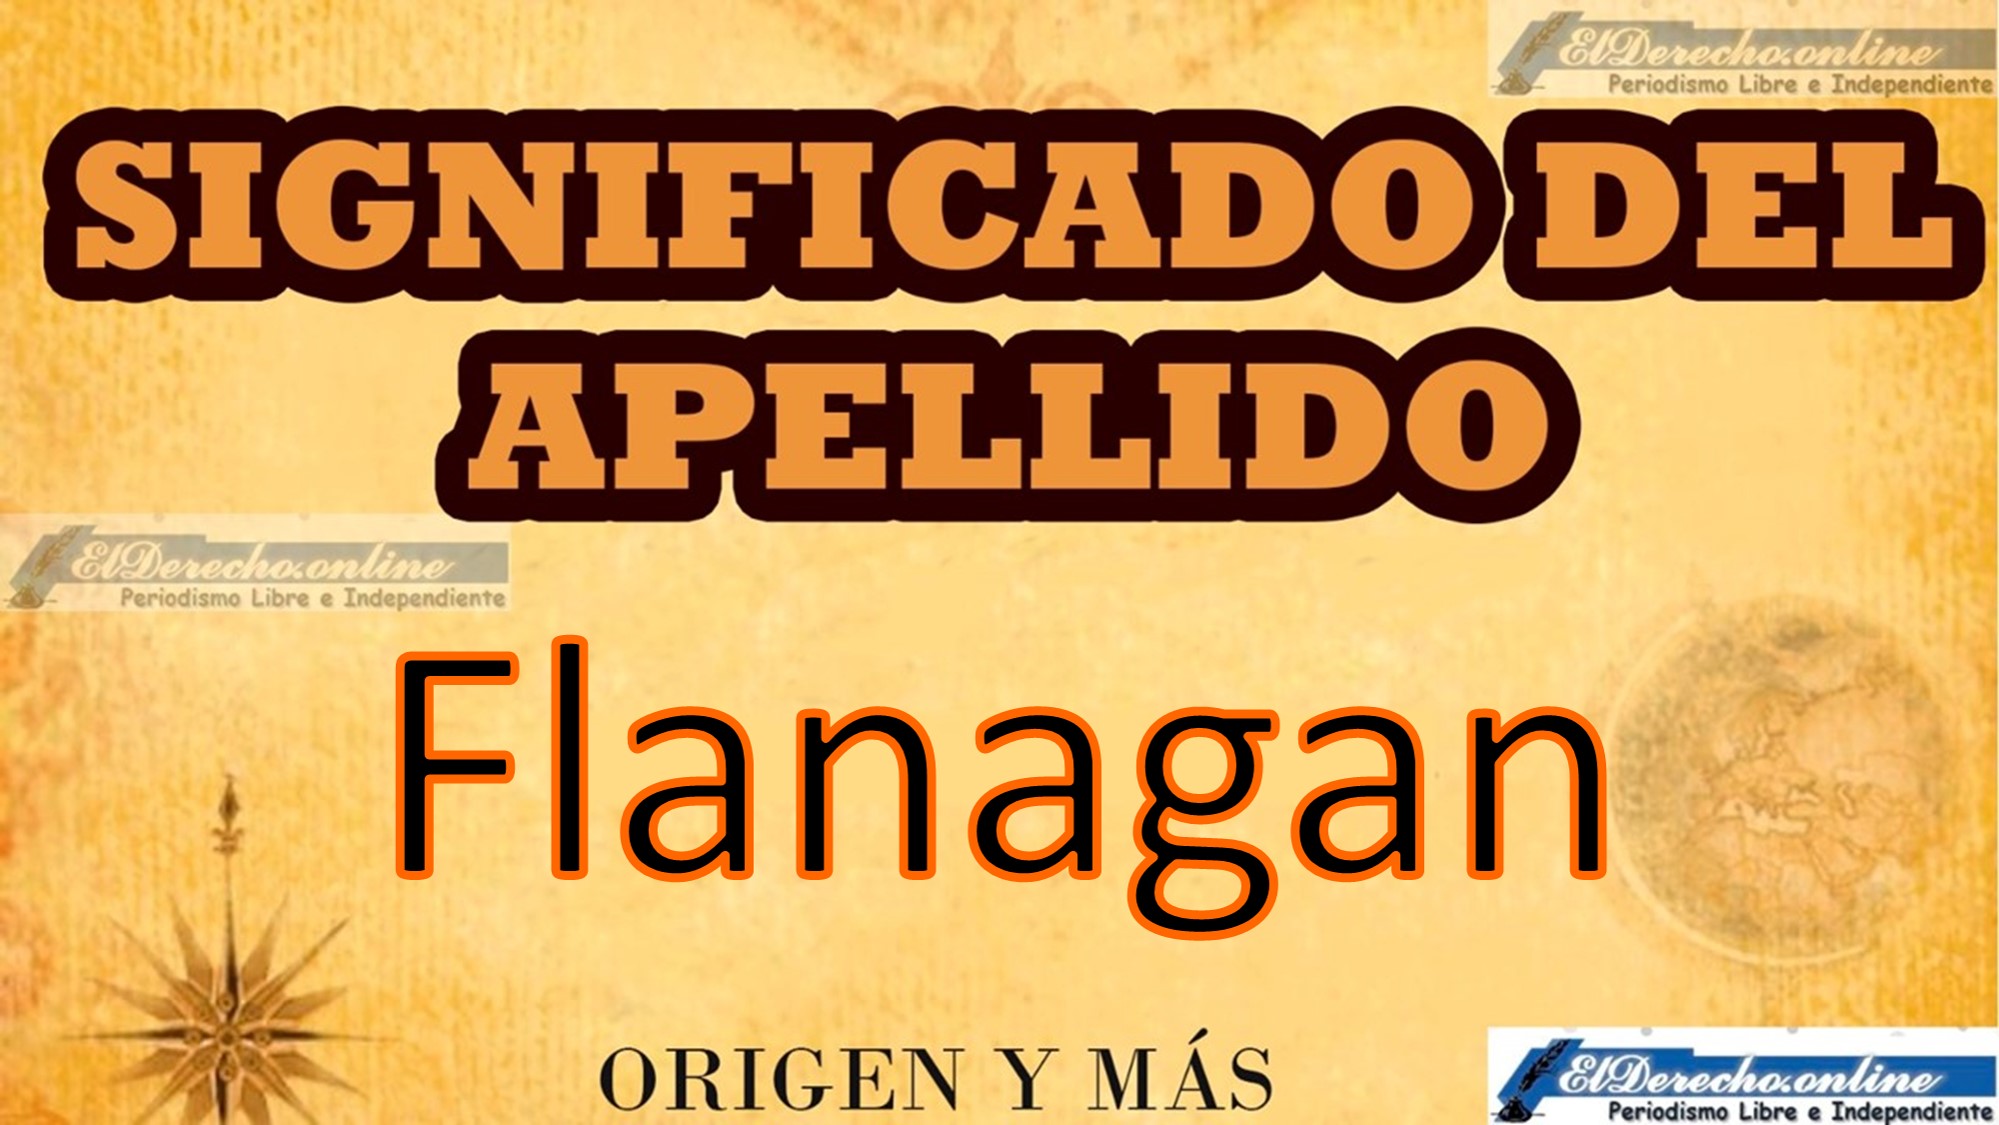 Significado del apellido Flanagan, Origen y más